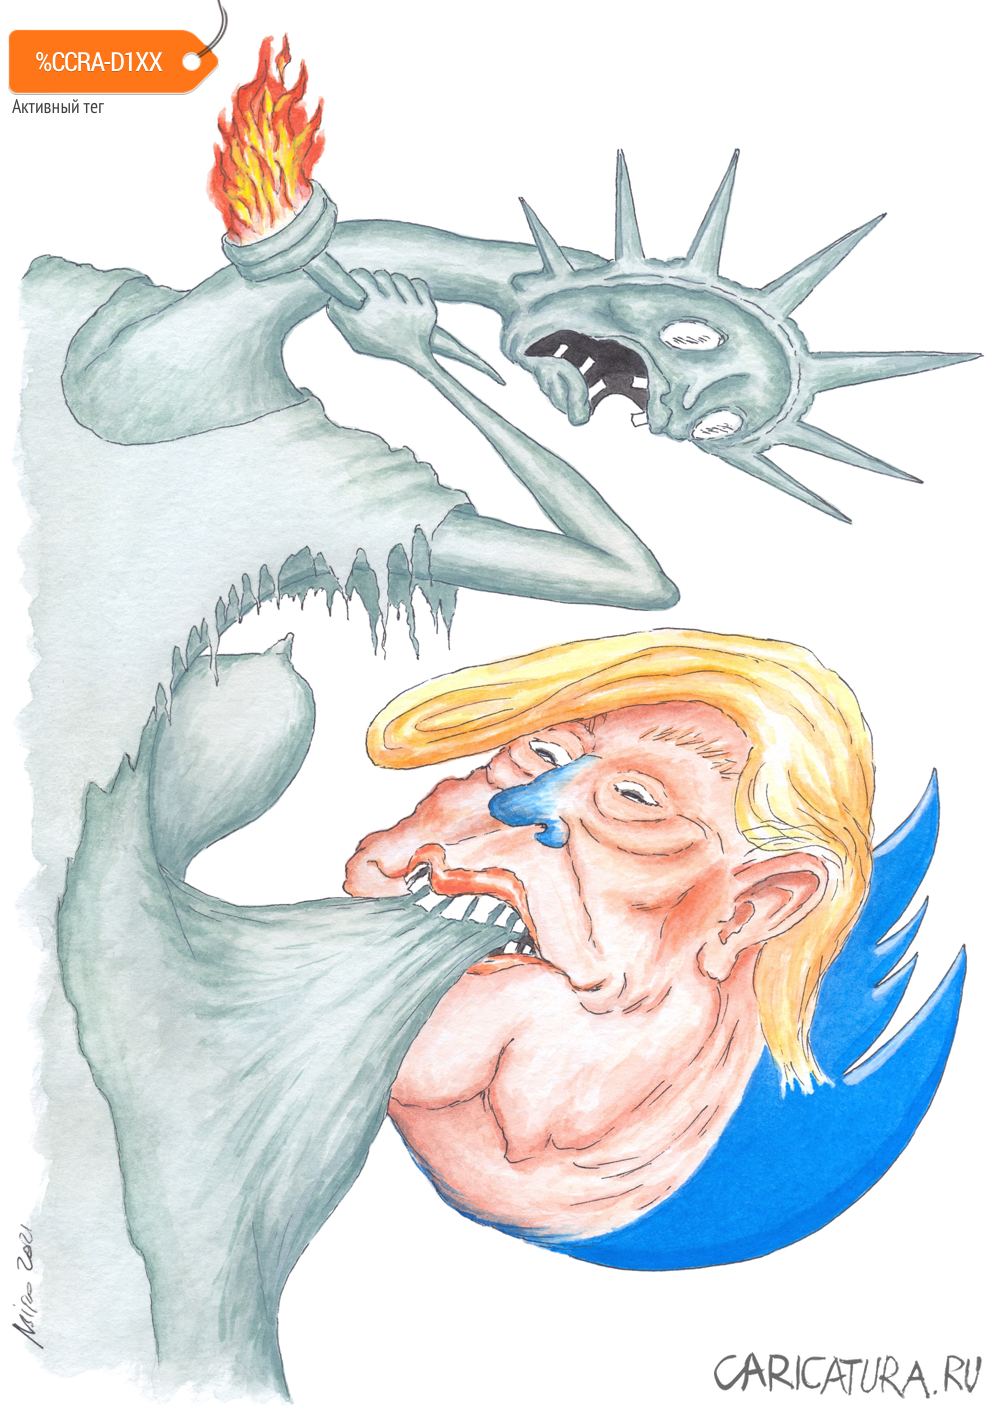 Карикатура "Твиттер Трампа "заклёвывает" Свободу", Игорь Мирошниченко